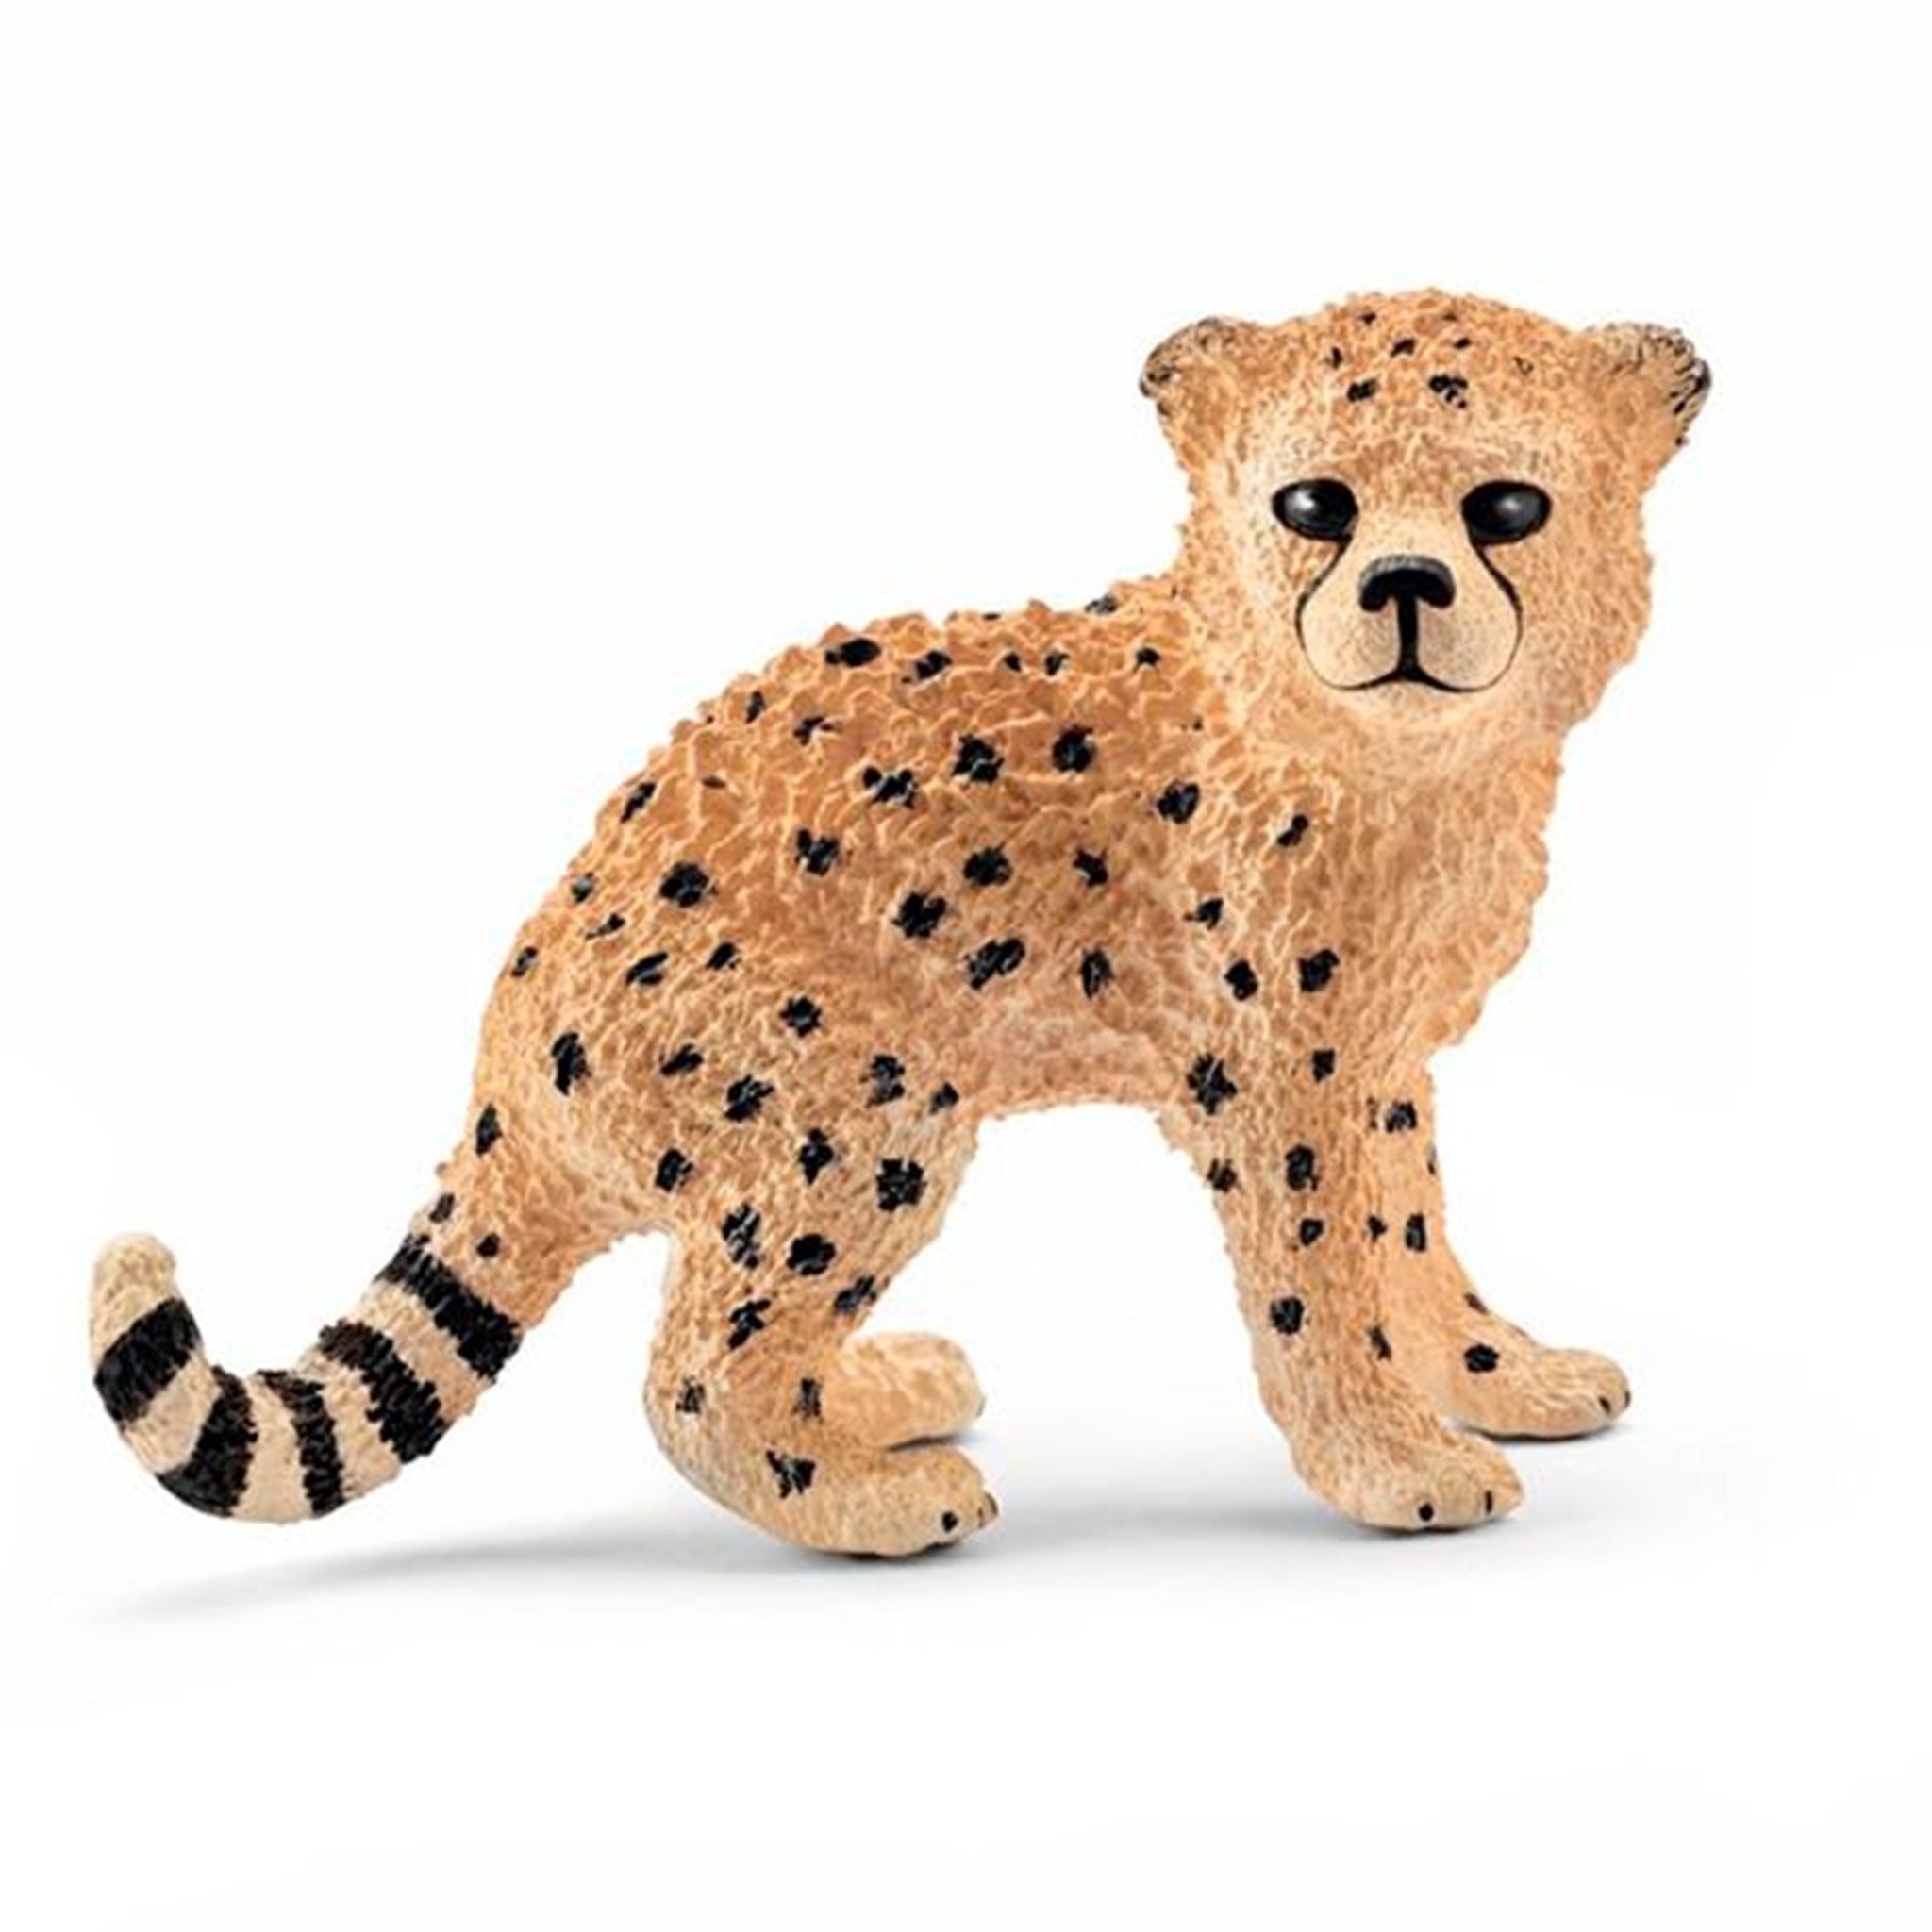 Schleich Wild Life Cheetah